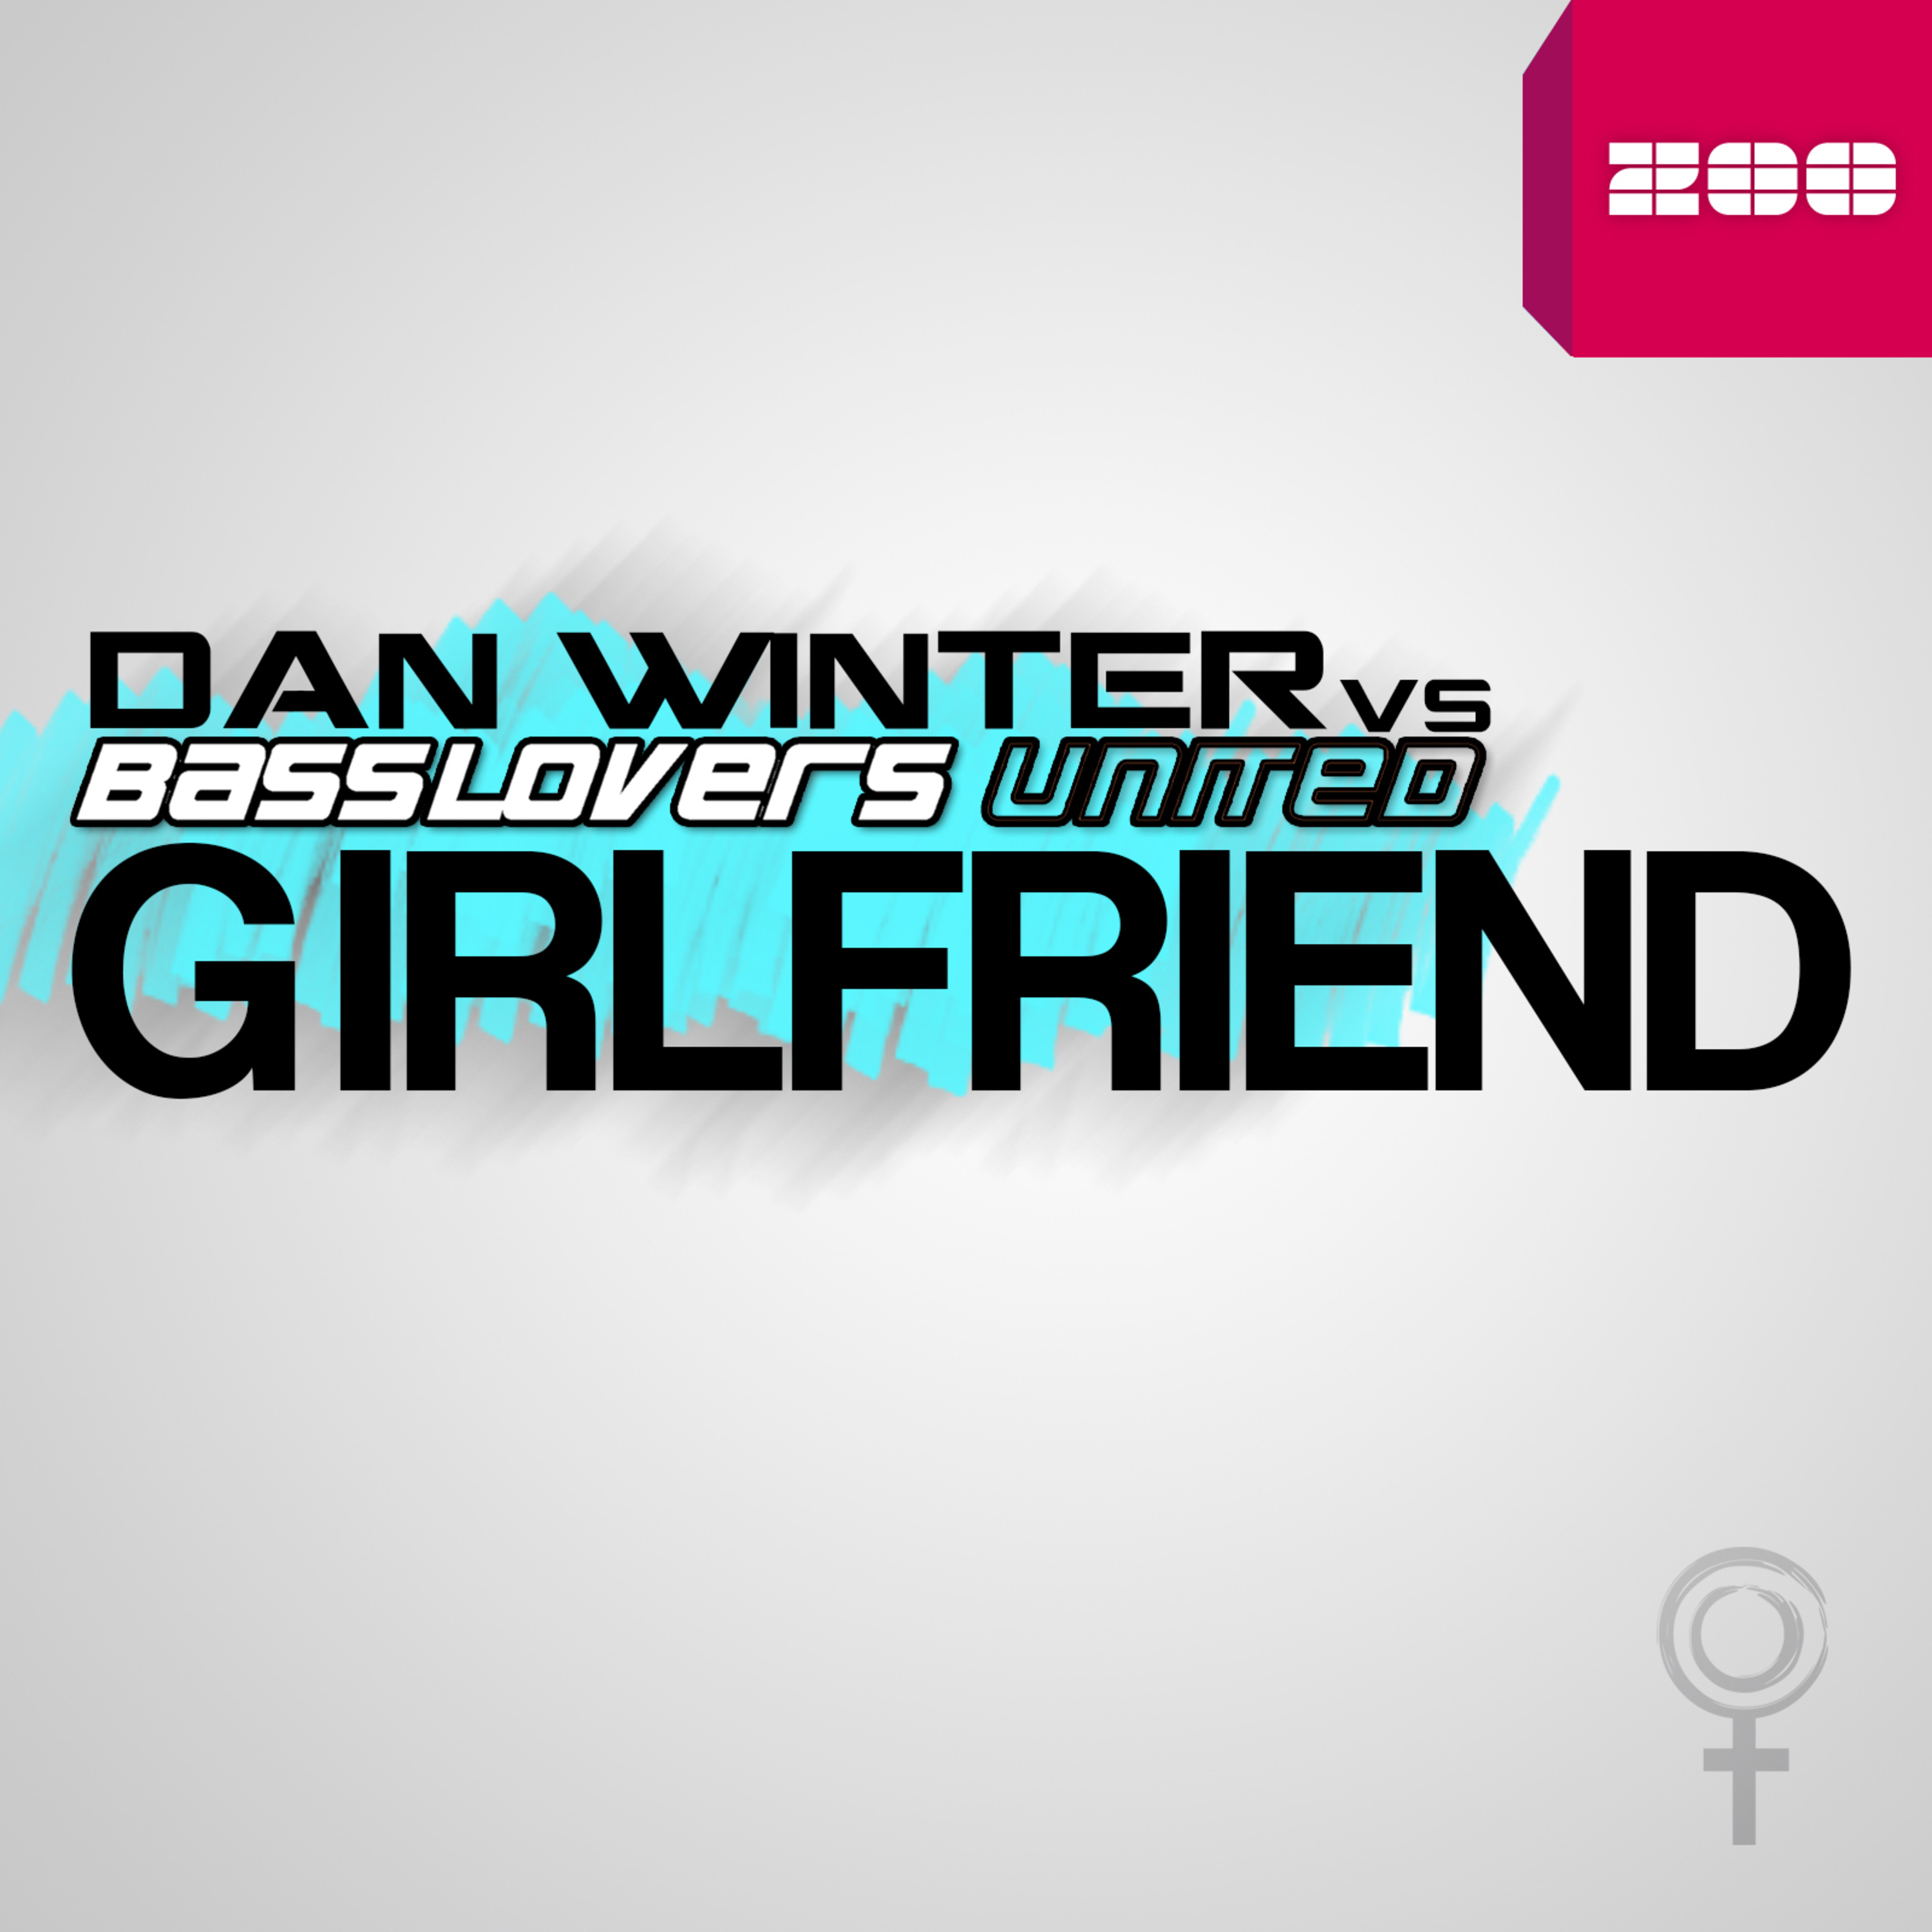 Girlfriend (Remixes)